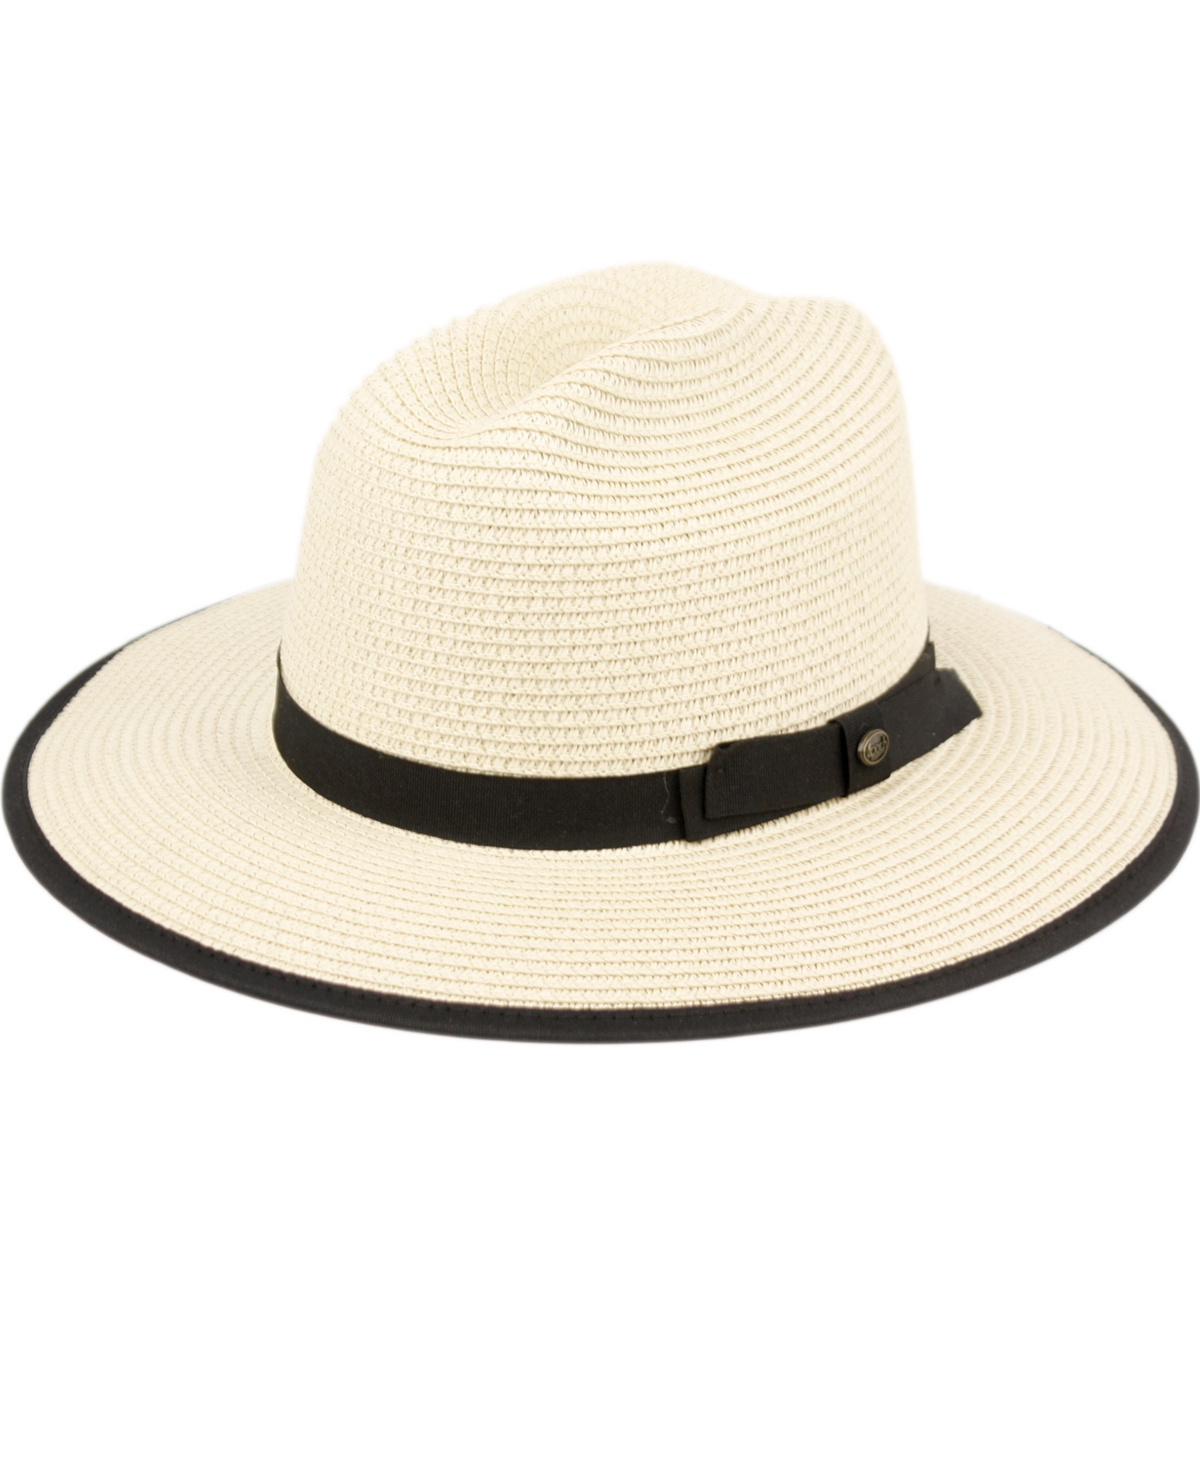 Unisex Gambler Safari Sun Panama Hat - Natural